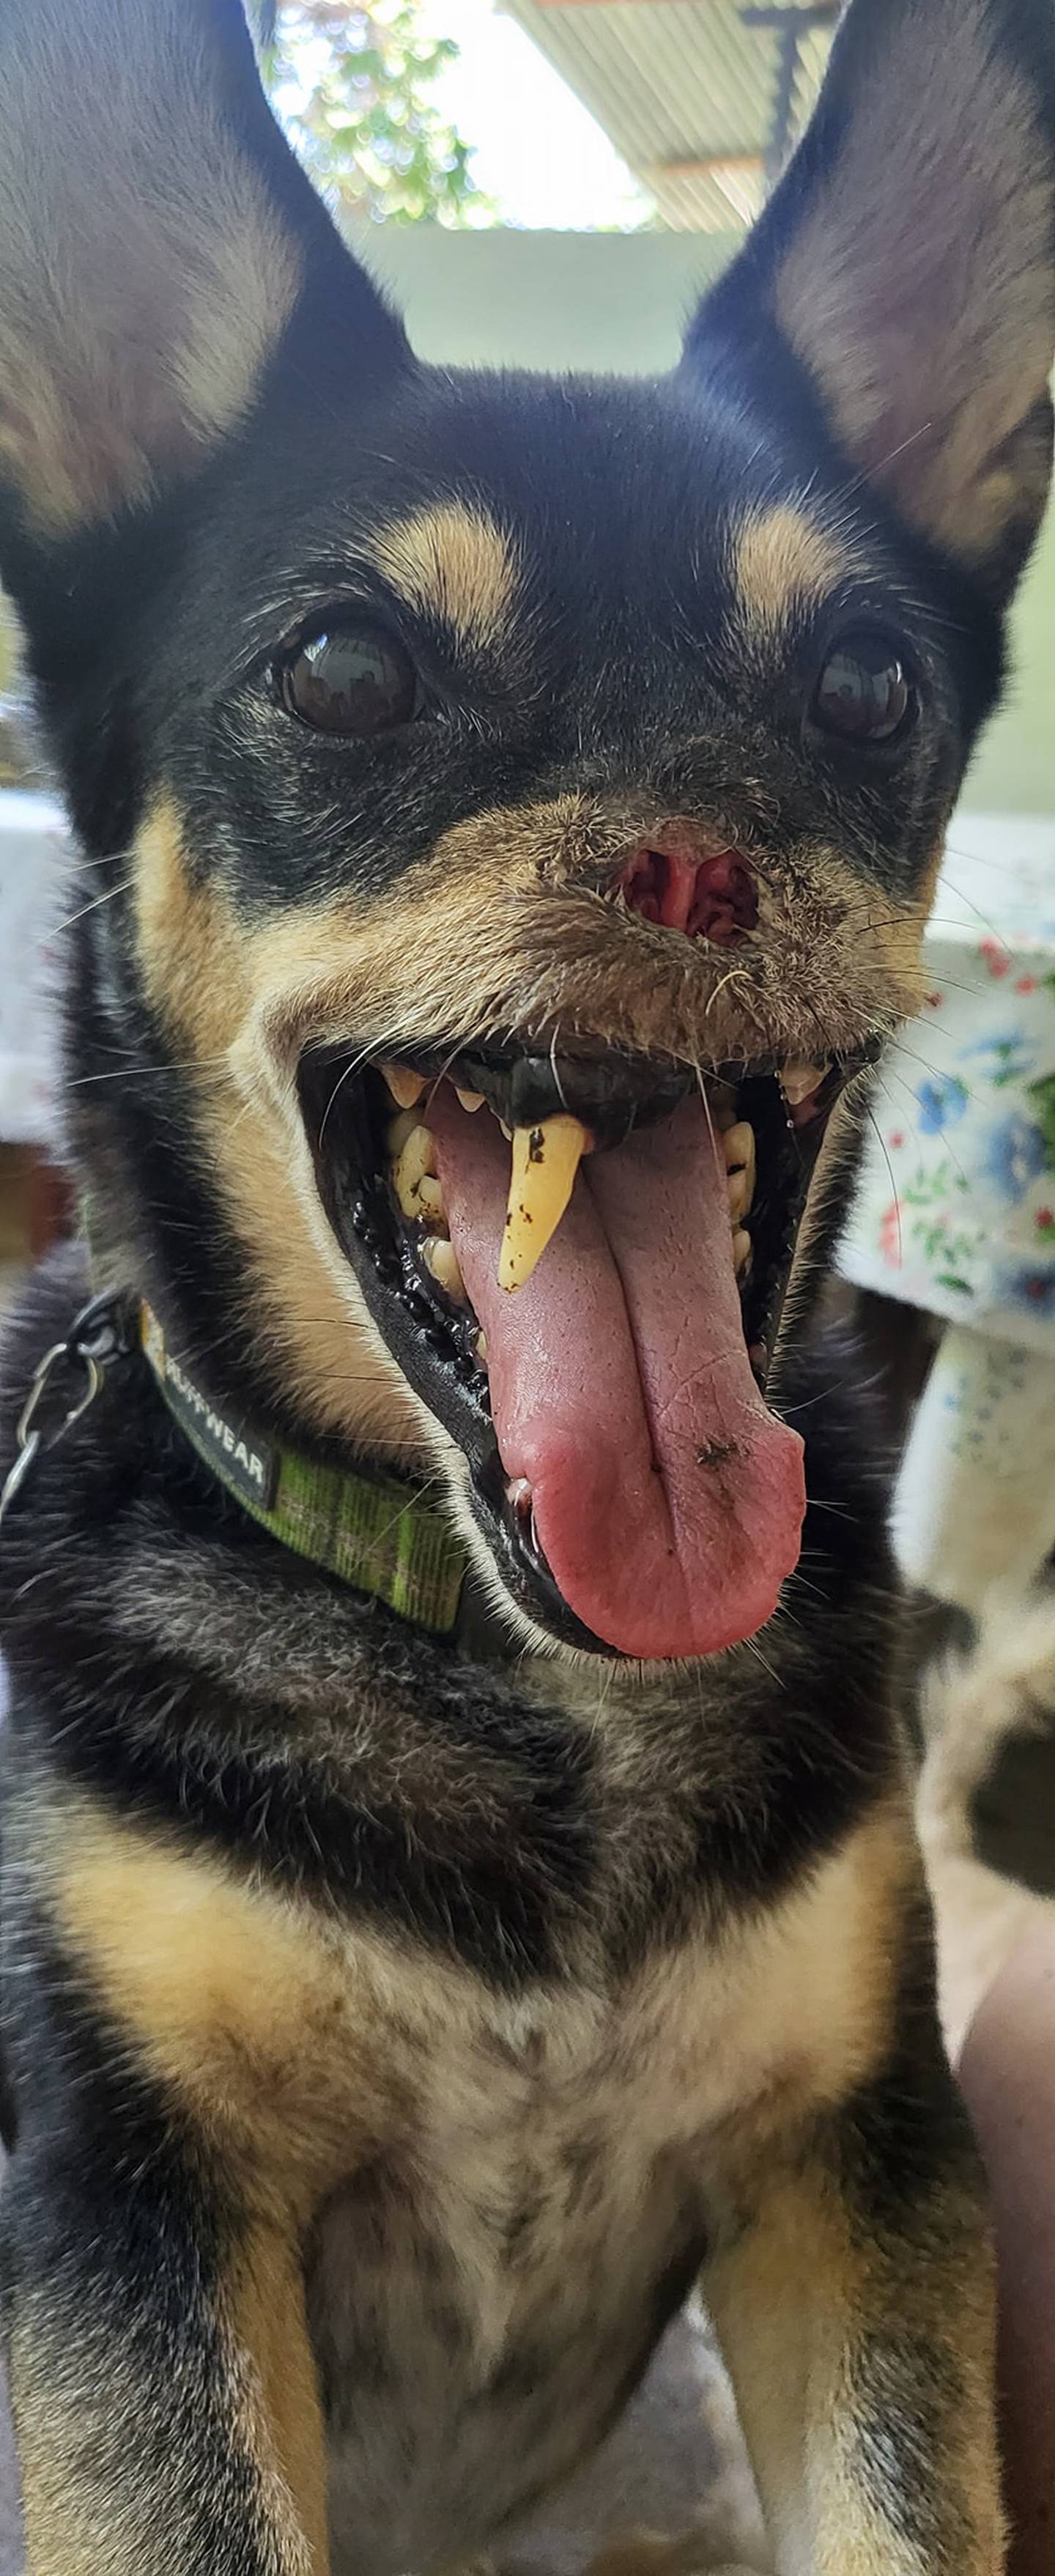 Al zaguatico Duke, símbolo del maltrato animal desde el 2016, se le desarrolló epilepsia, confirmaron los especialistas de la veterinaria Neurovet, después de varios exámenes que le realizaron